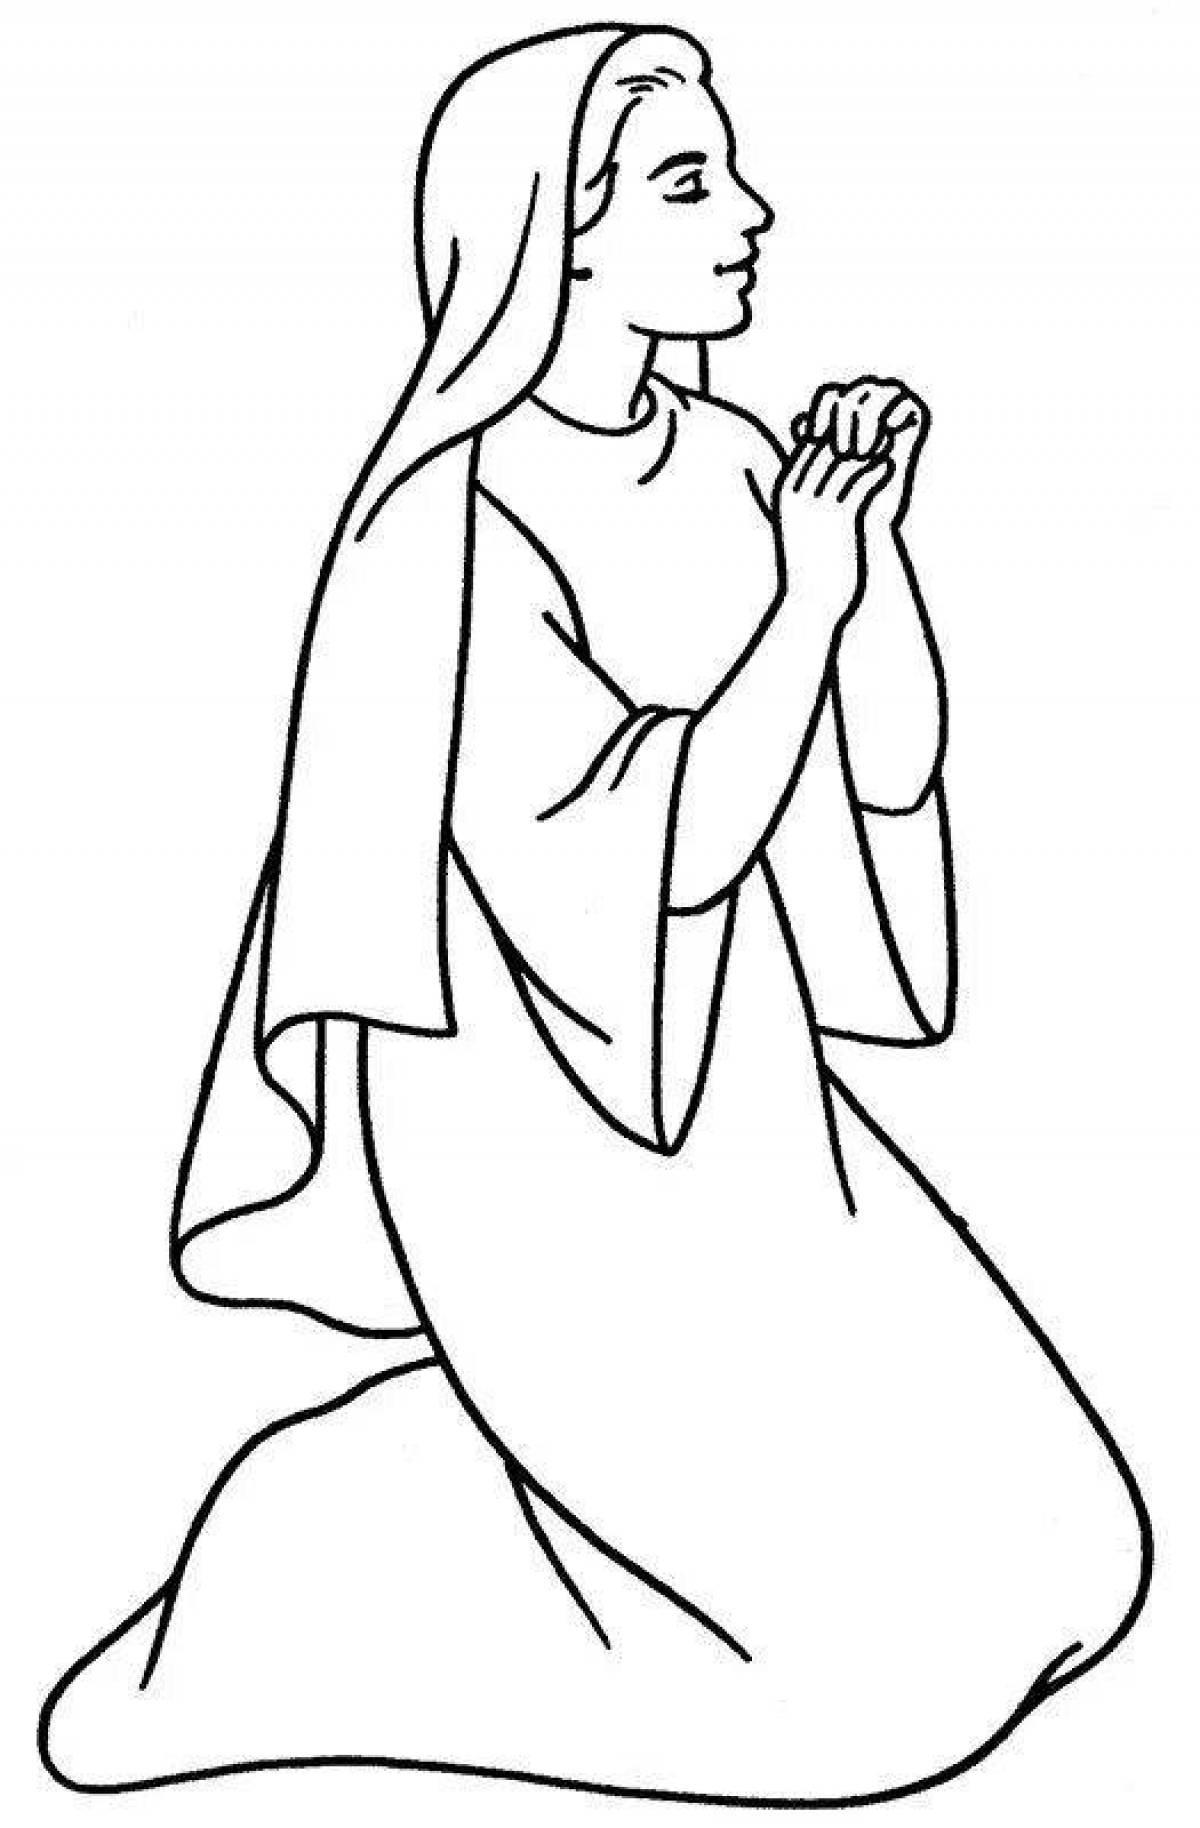 Иллюстративная страница раскраски девы марии